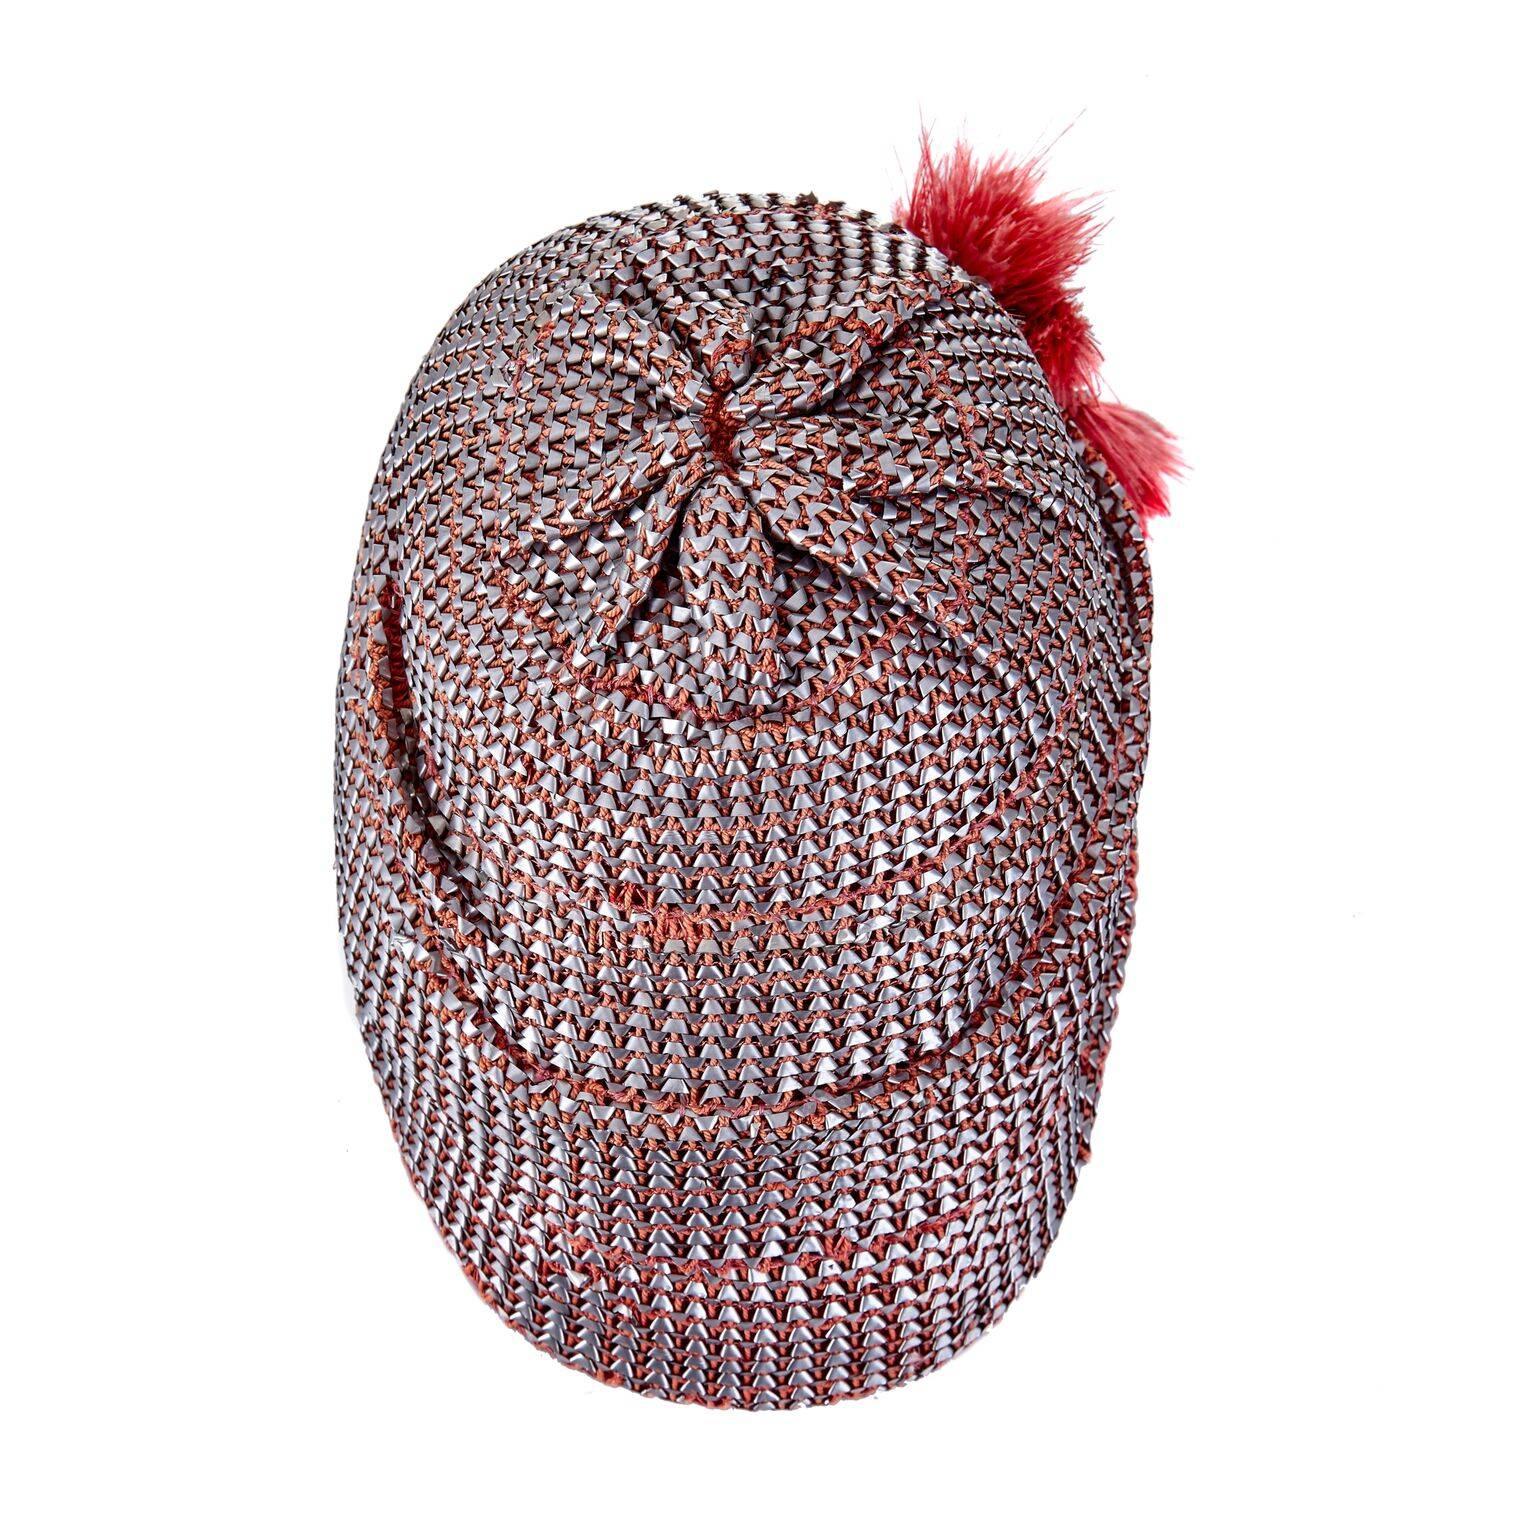 Dieser exquisite Flapper-Cloche-Hut aus den 1920er Jahren mit metallischem Bastgeflecht ist in ausgezeichnetem Vintage-Zustand. Der Hut ist aus weichem, rotem Filz geformt und innen mit einem grobkörnigen Band versehen, so dass der Hut beim Tragen